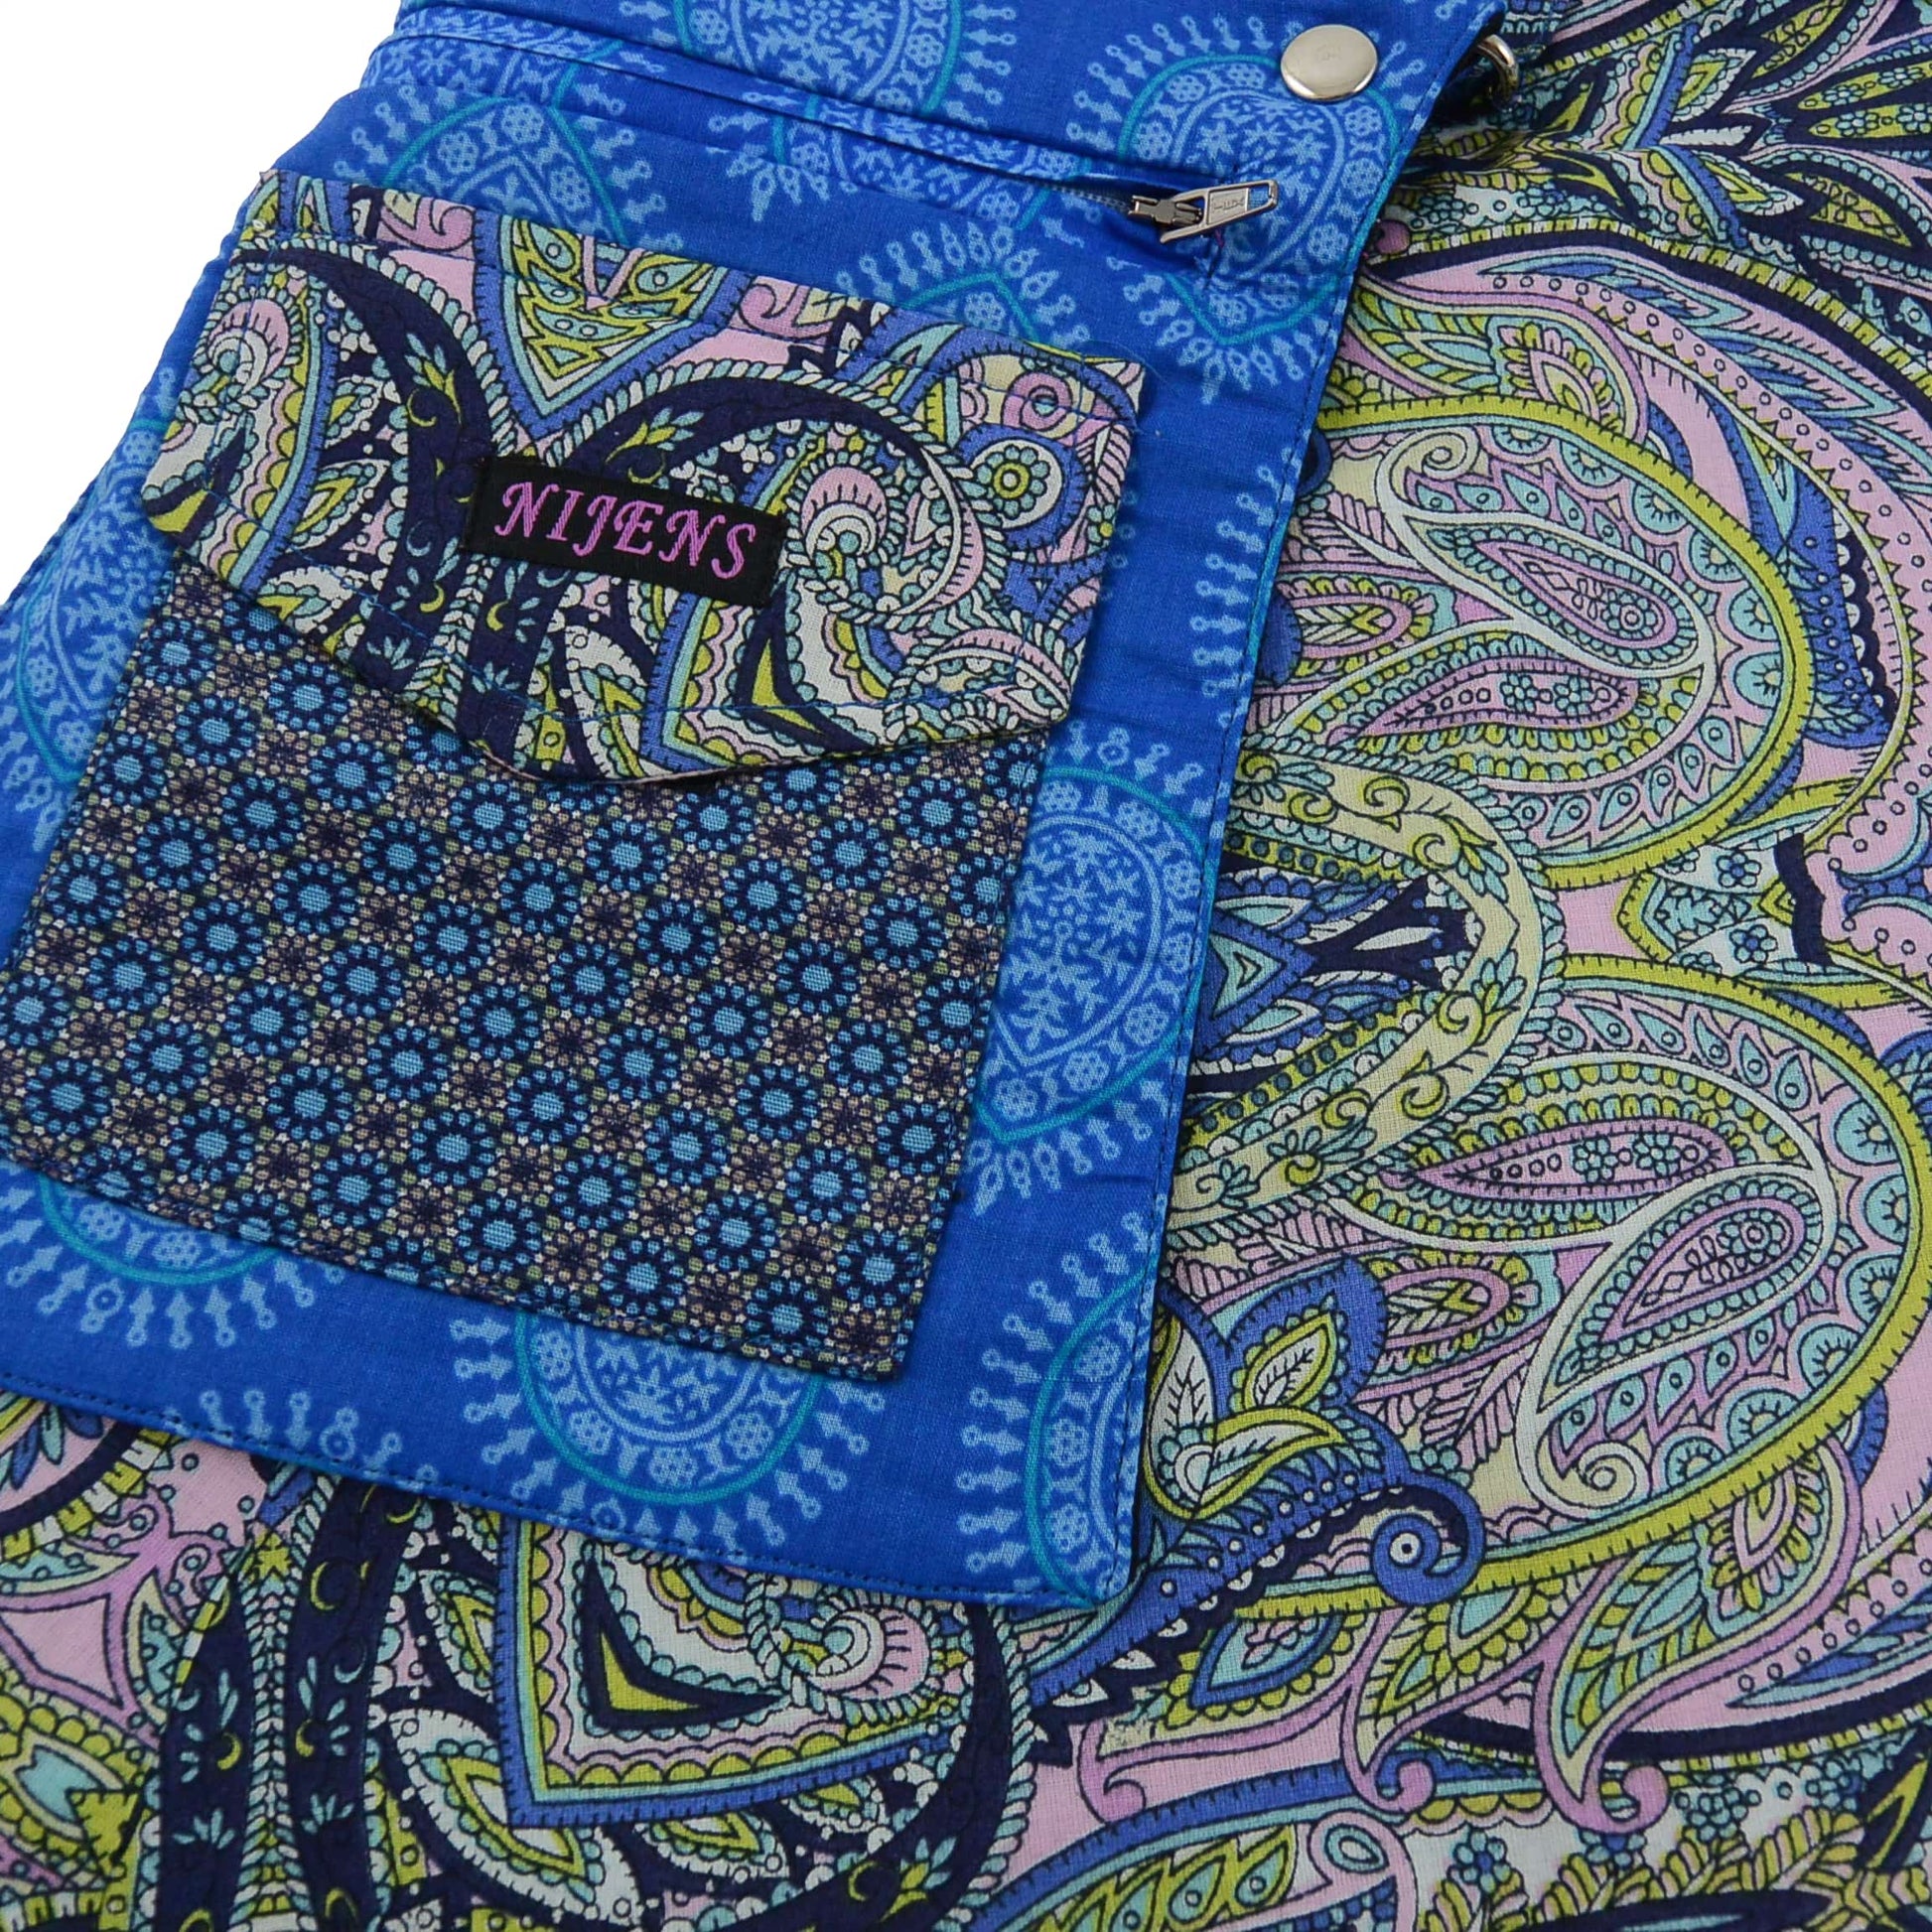 Nijens Skirt Sommerrock Damen Rock mit Indischem Motiv in Blau-Rosa